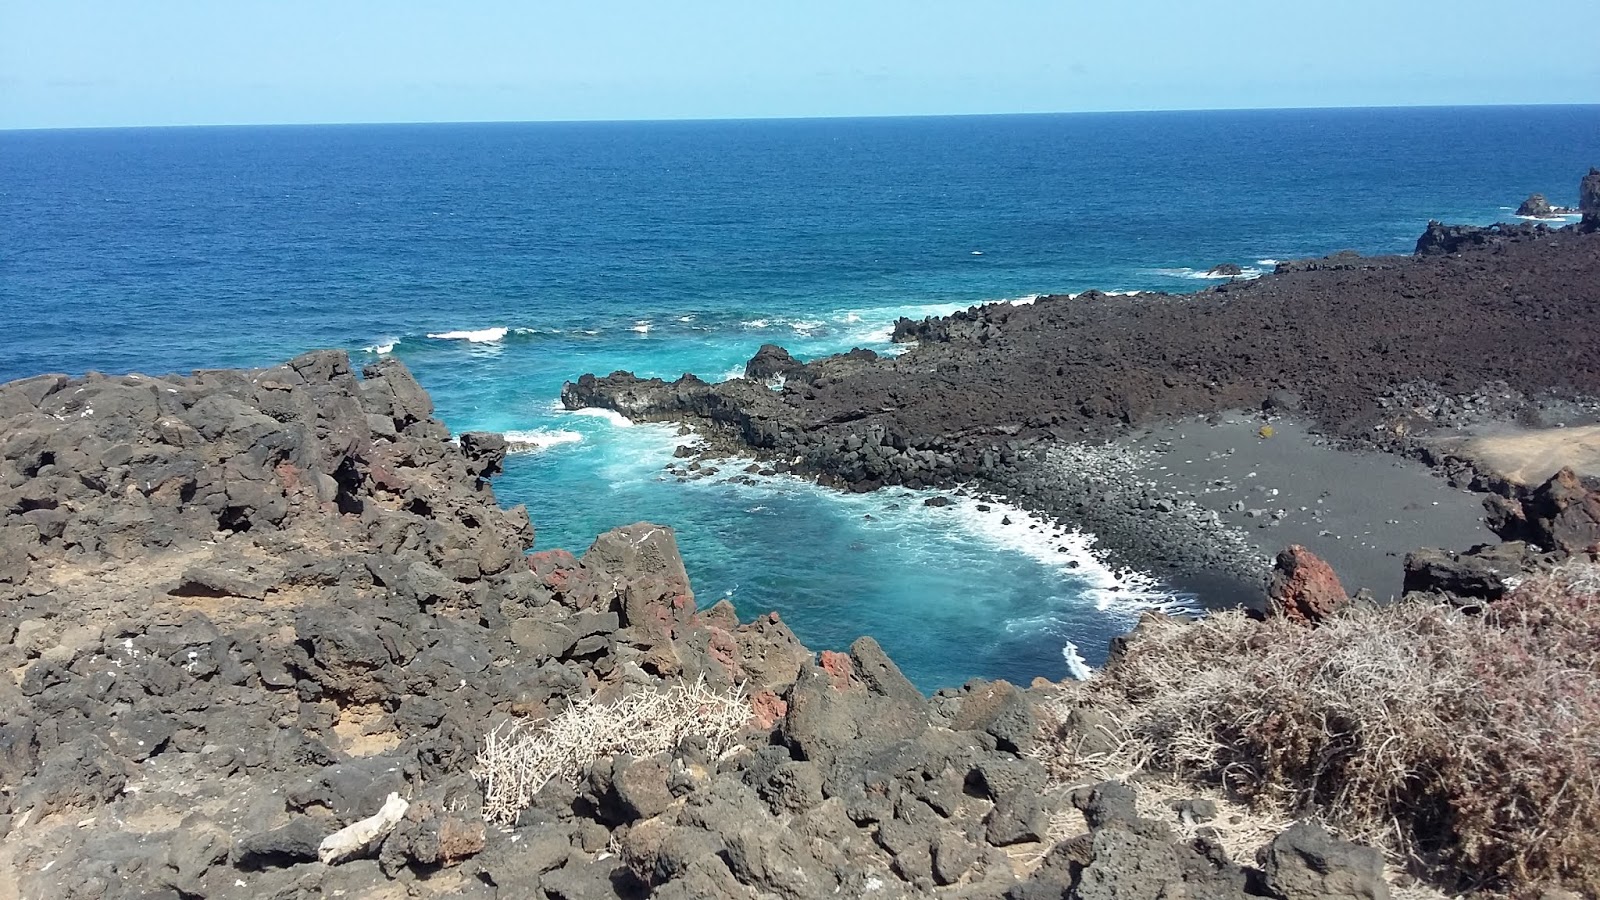 Explorando El Golfo - Lanzarote, playas y pateos (7)